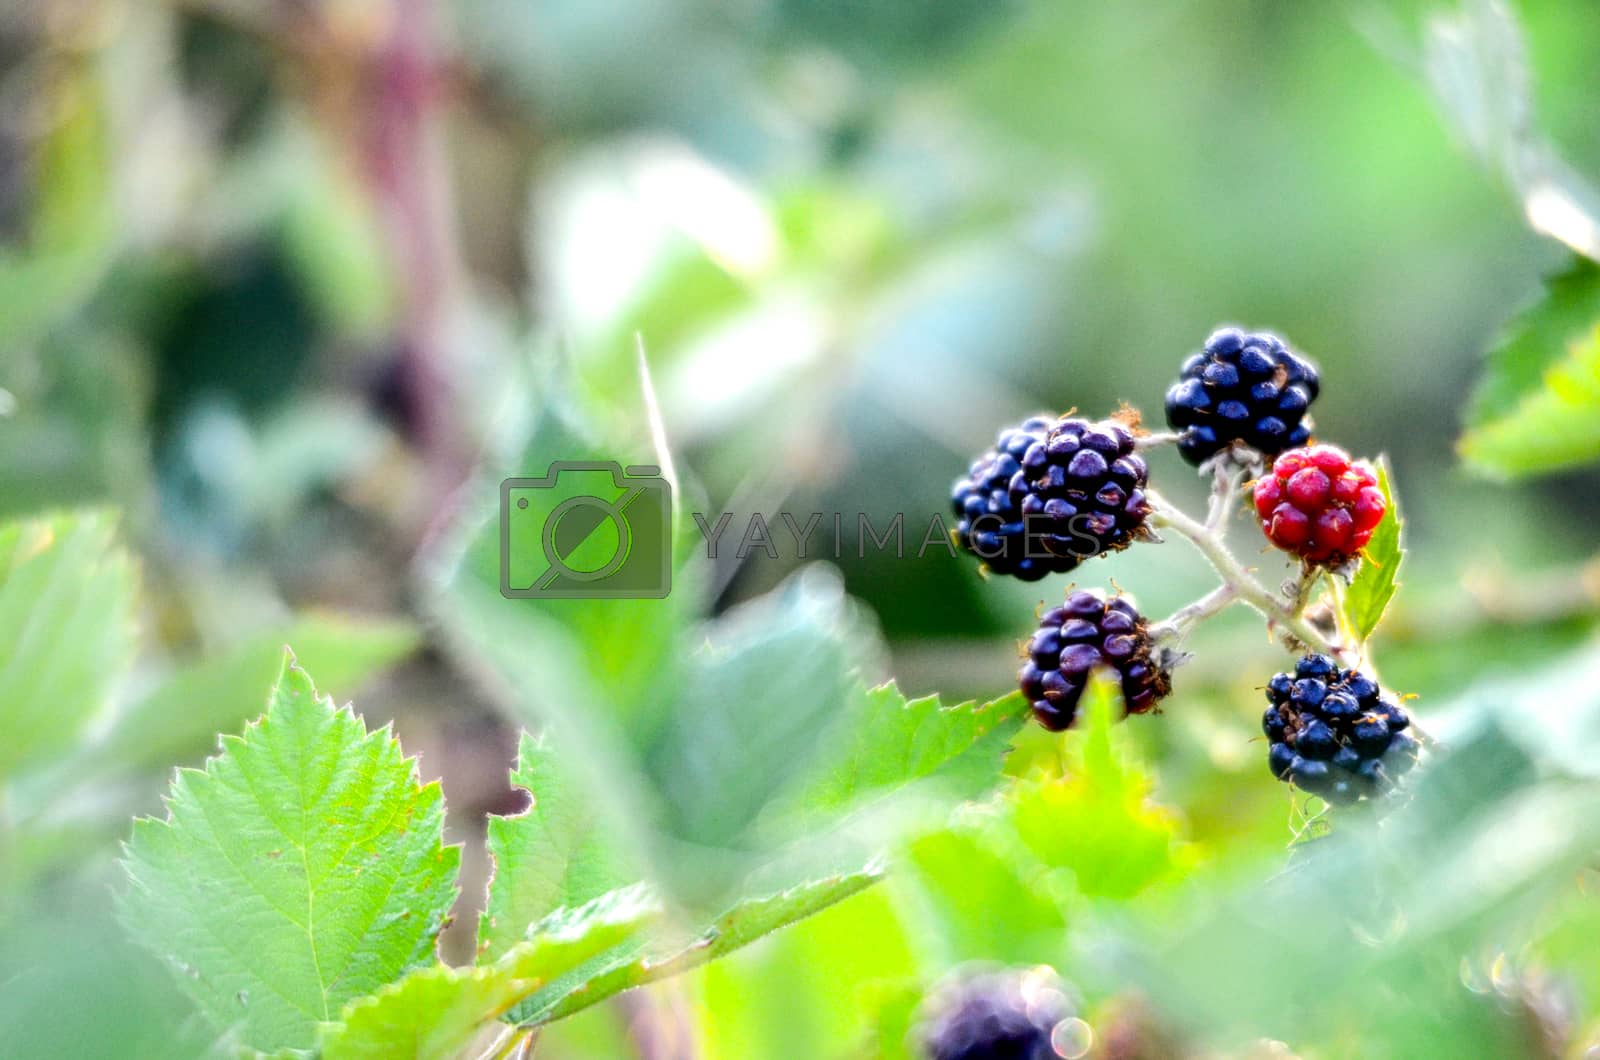 Royalty free image of Blackberries Growing on Bush by nehru